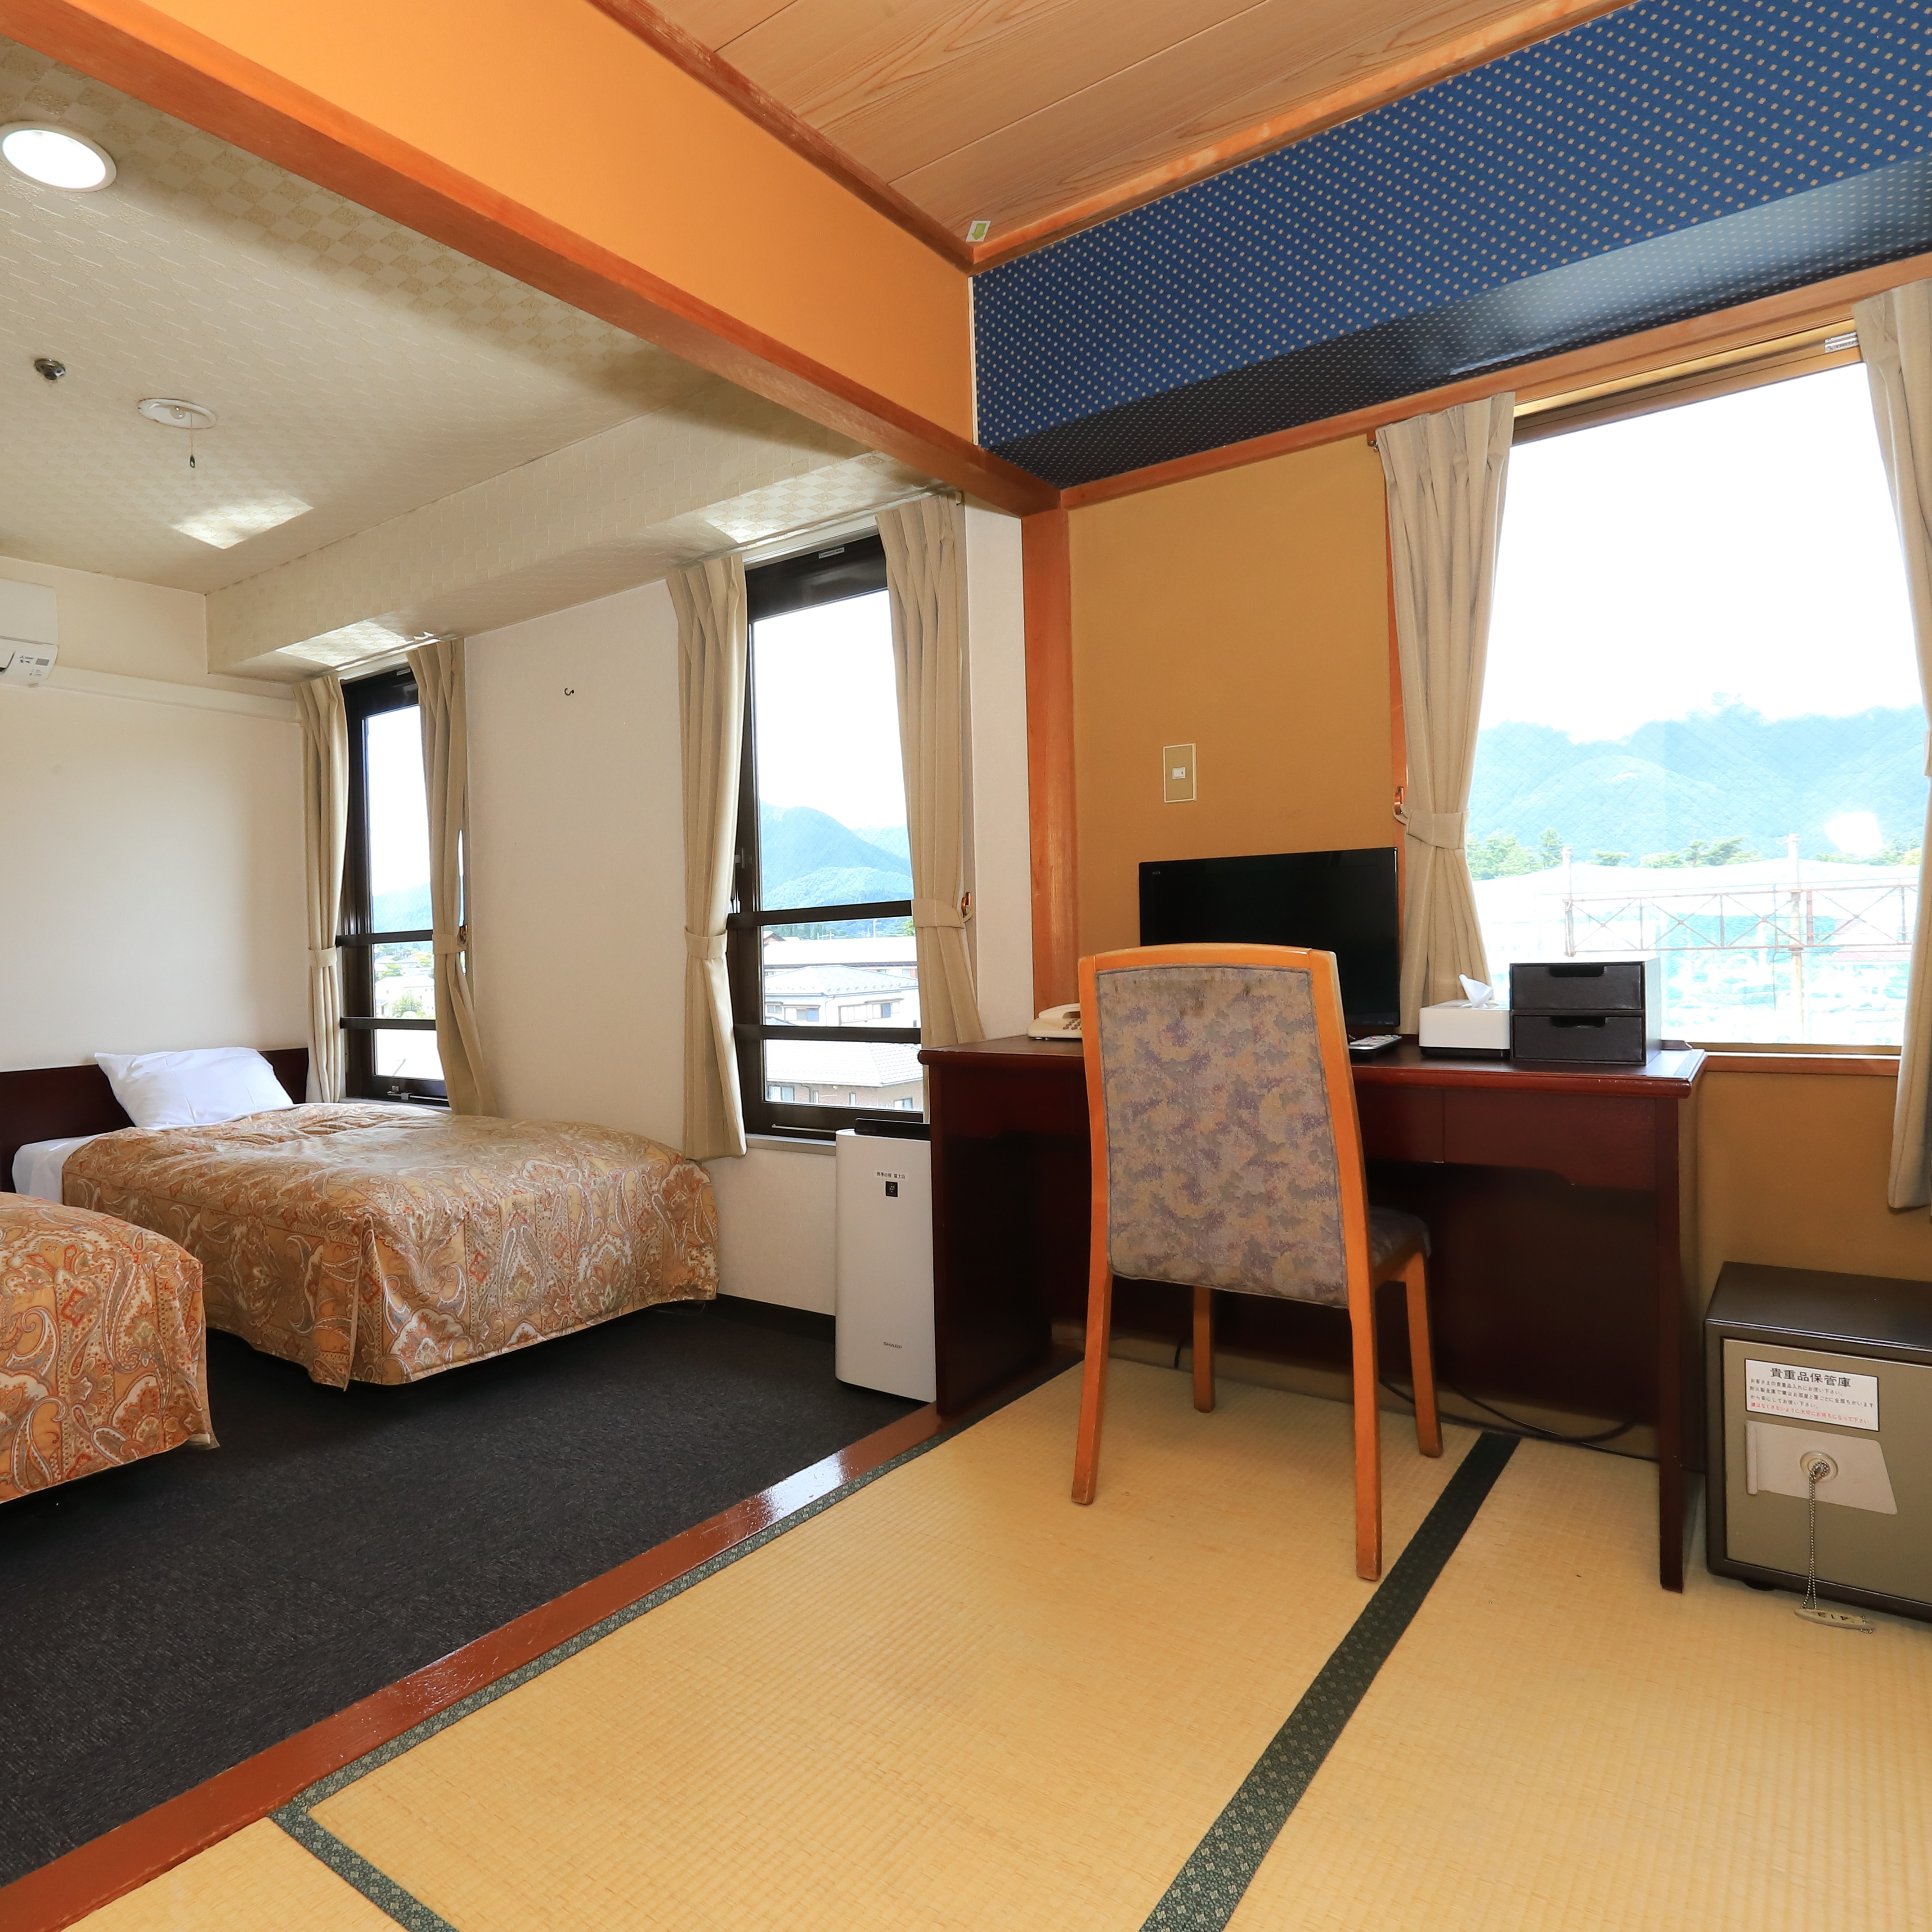 ห้องพักสไตล์ญี่ปุ่น-ตะวันตกพร้อมเตียงแฝด + เสื่อทาทามิ 3 ผืน